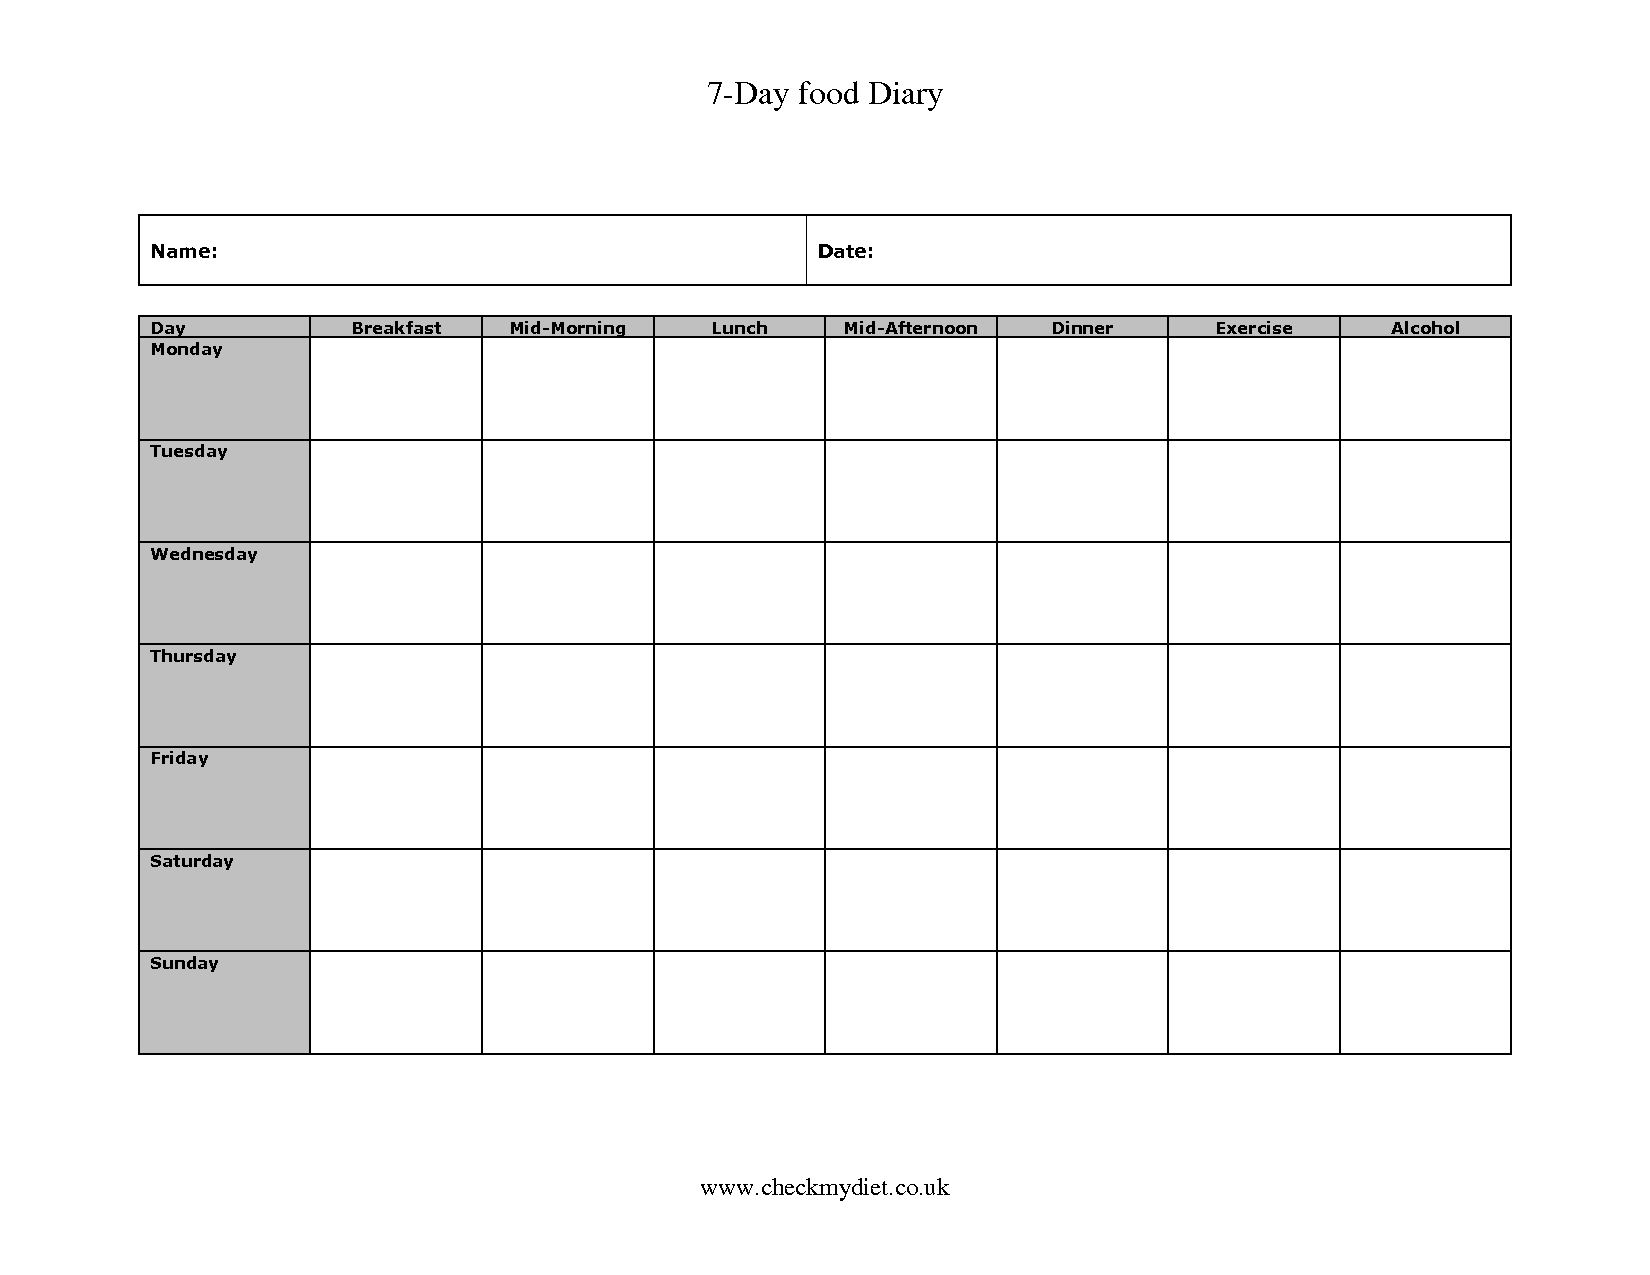 Food Diary Log Sheets Image